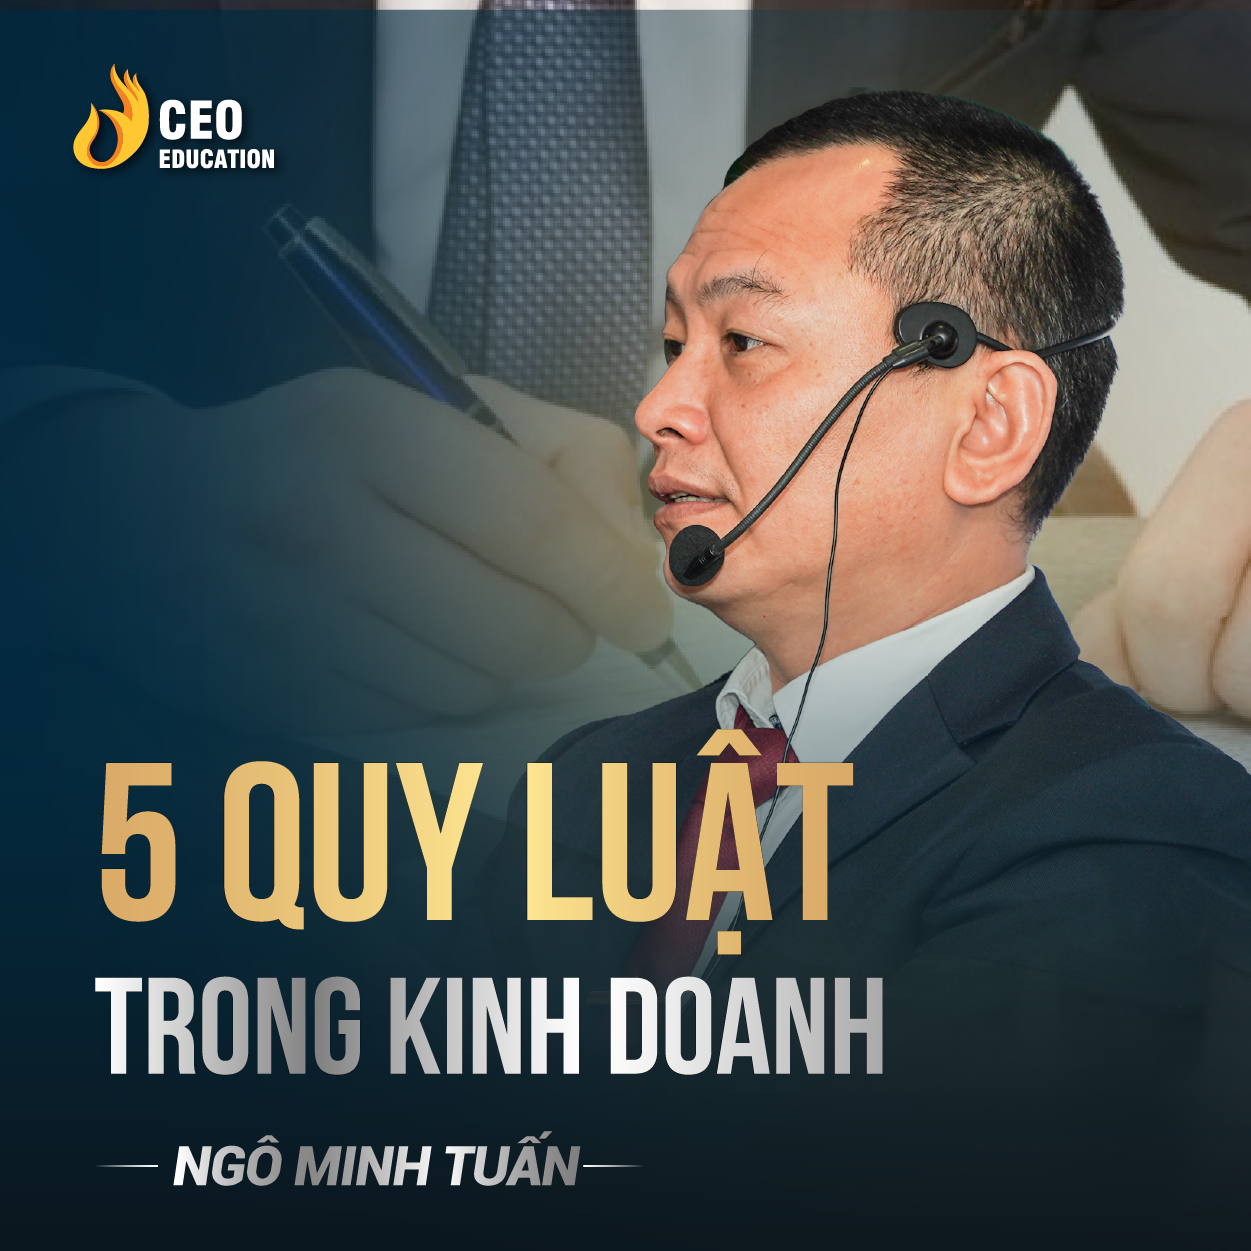 5 quy luật trong kinh doanh, hiểu để thành công | Ngô Minh Tuấn | Học Viện CEO Việt Nam